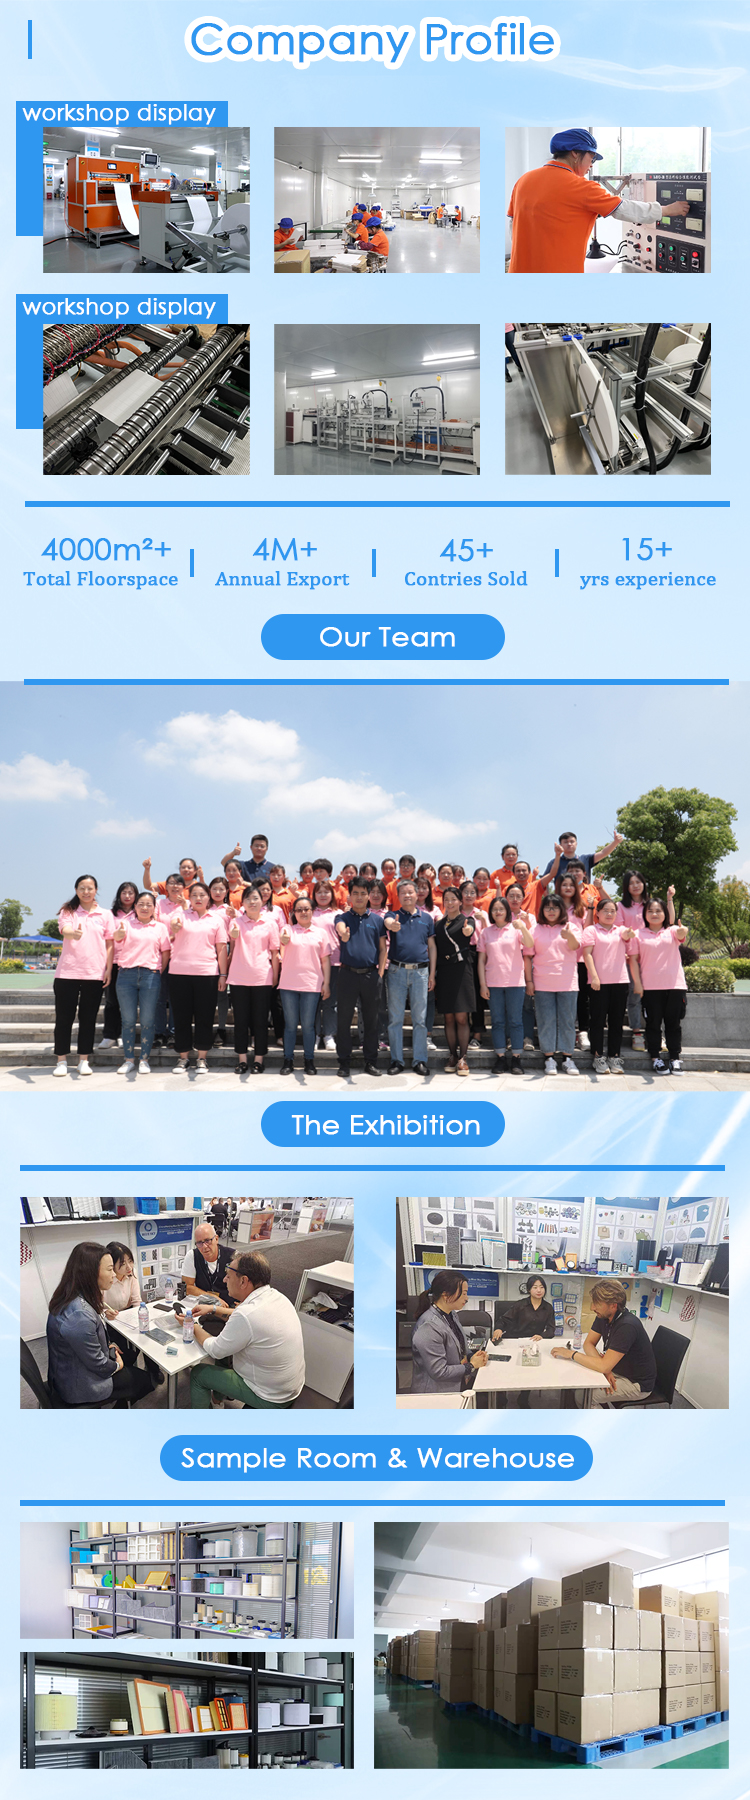 회사 프로필 Nanjing Blue Sky Filter Co., Ltd.